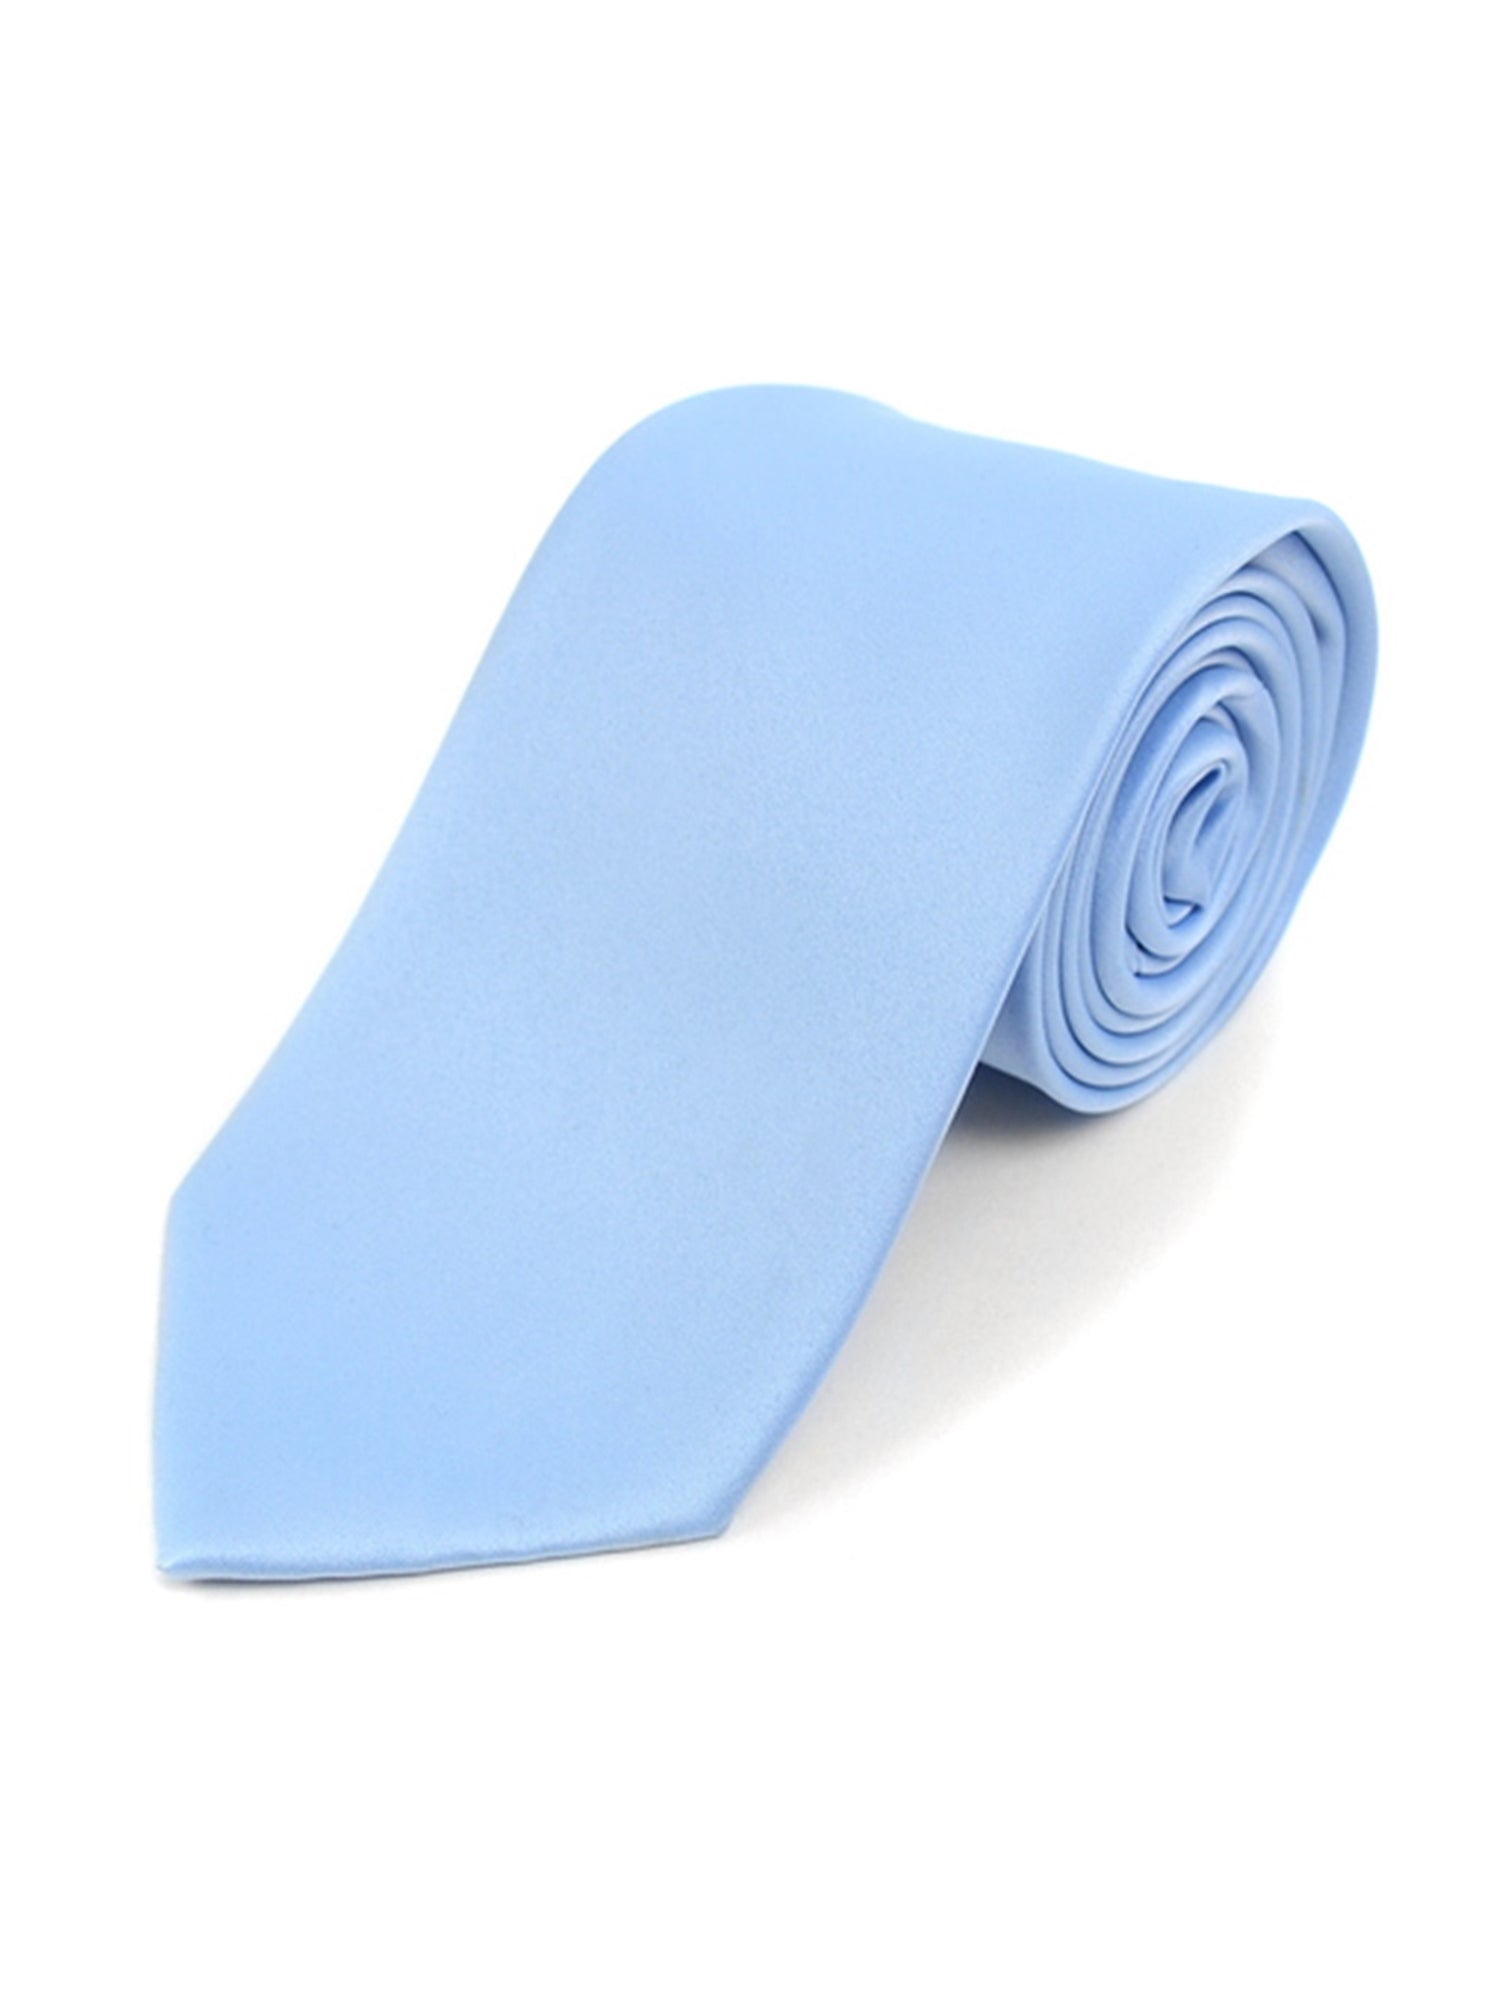 Boy's Age 12-18 Solid Color Poly Neck Tie Boy's Solid Color Neck Tie TheDapperTie Sky Blue 49" 